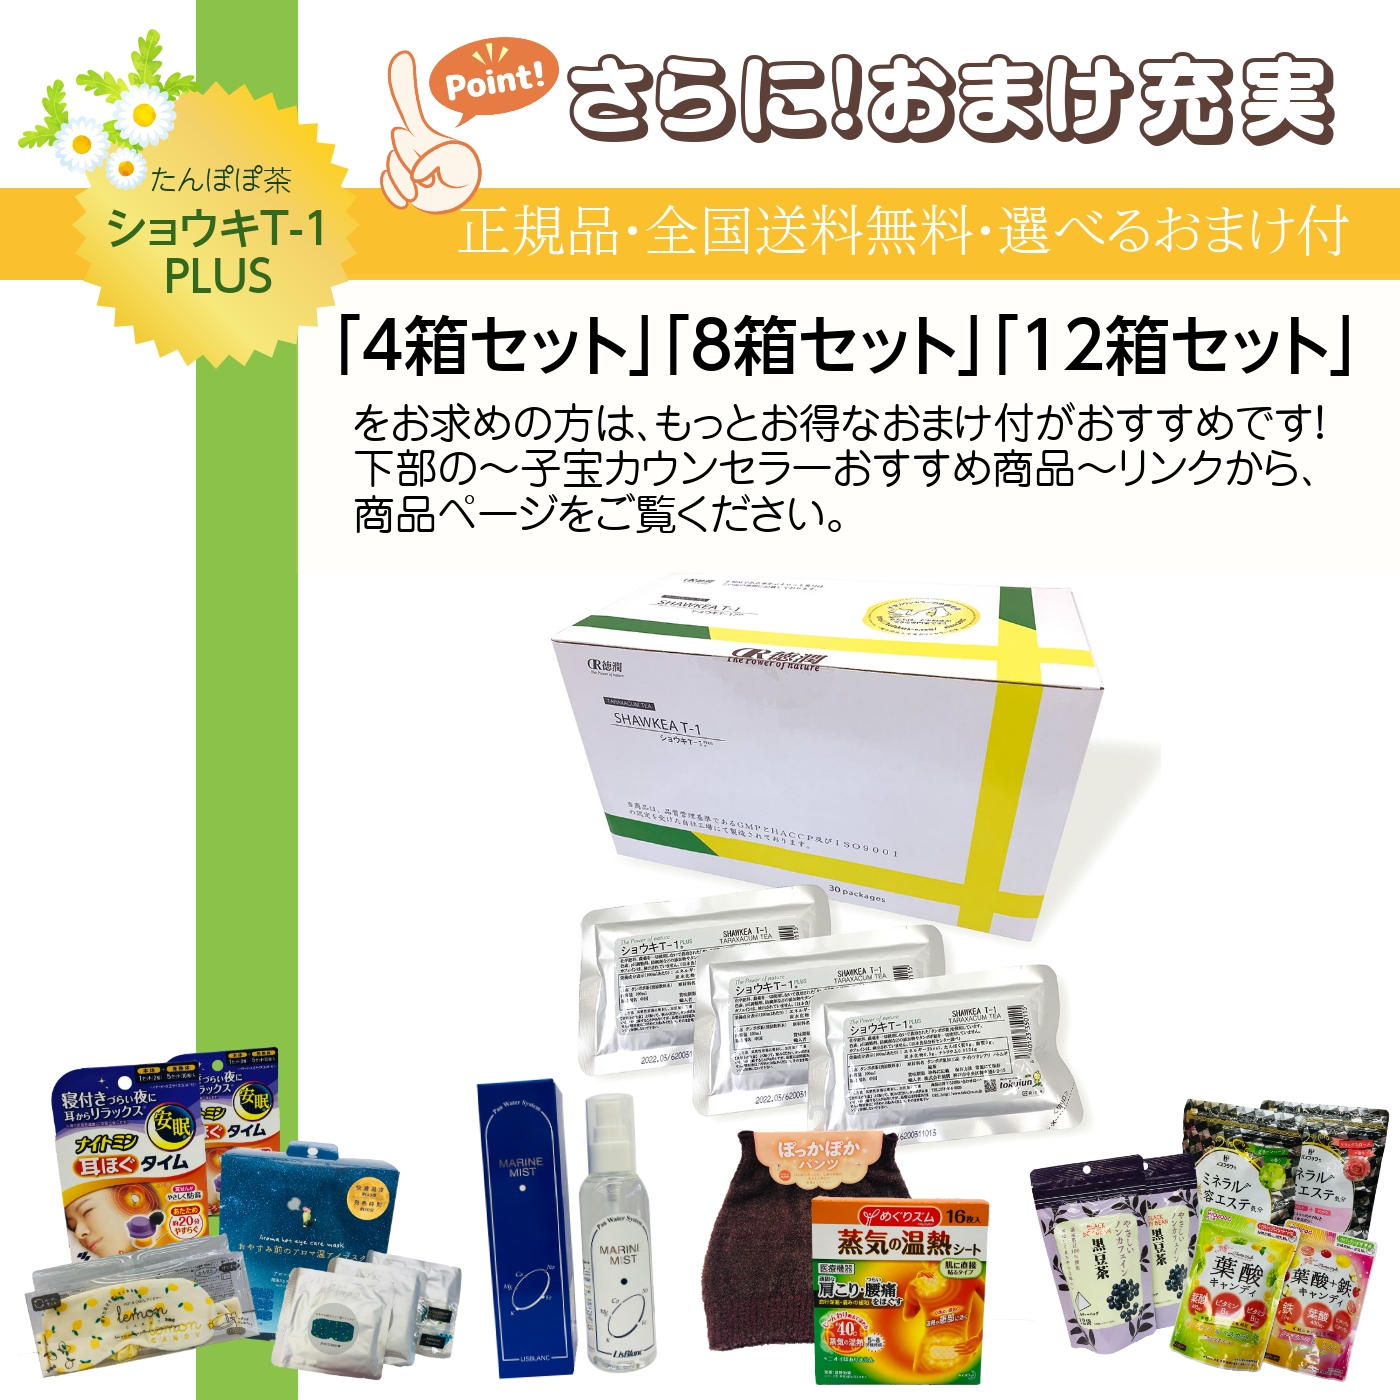 【楽天市場】ショウキT-1プラス 30包 1箱 正規取扱店 ノンカフェ 